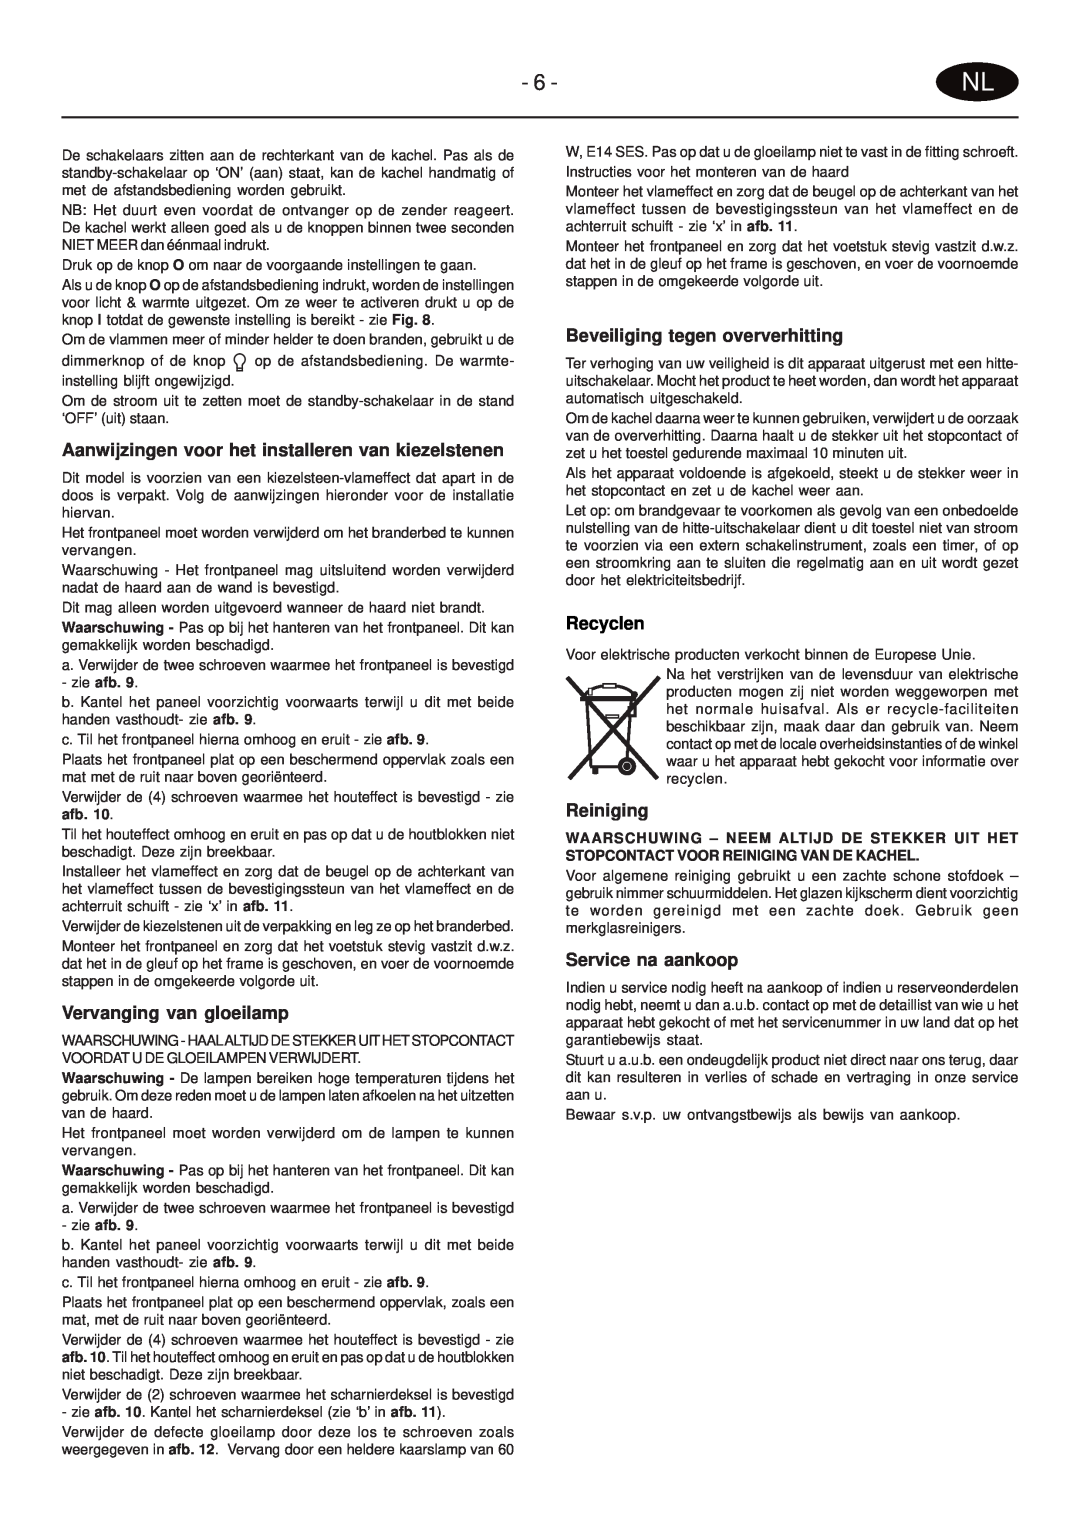 Faber PRS20 manual Vervanging van gloeilamp, Beveiliging tegen oververhitting, Reiniging, Service na aankoop, Recyclen 